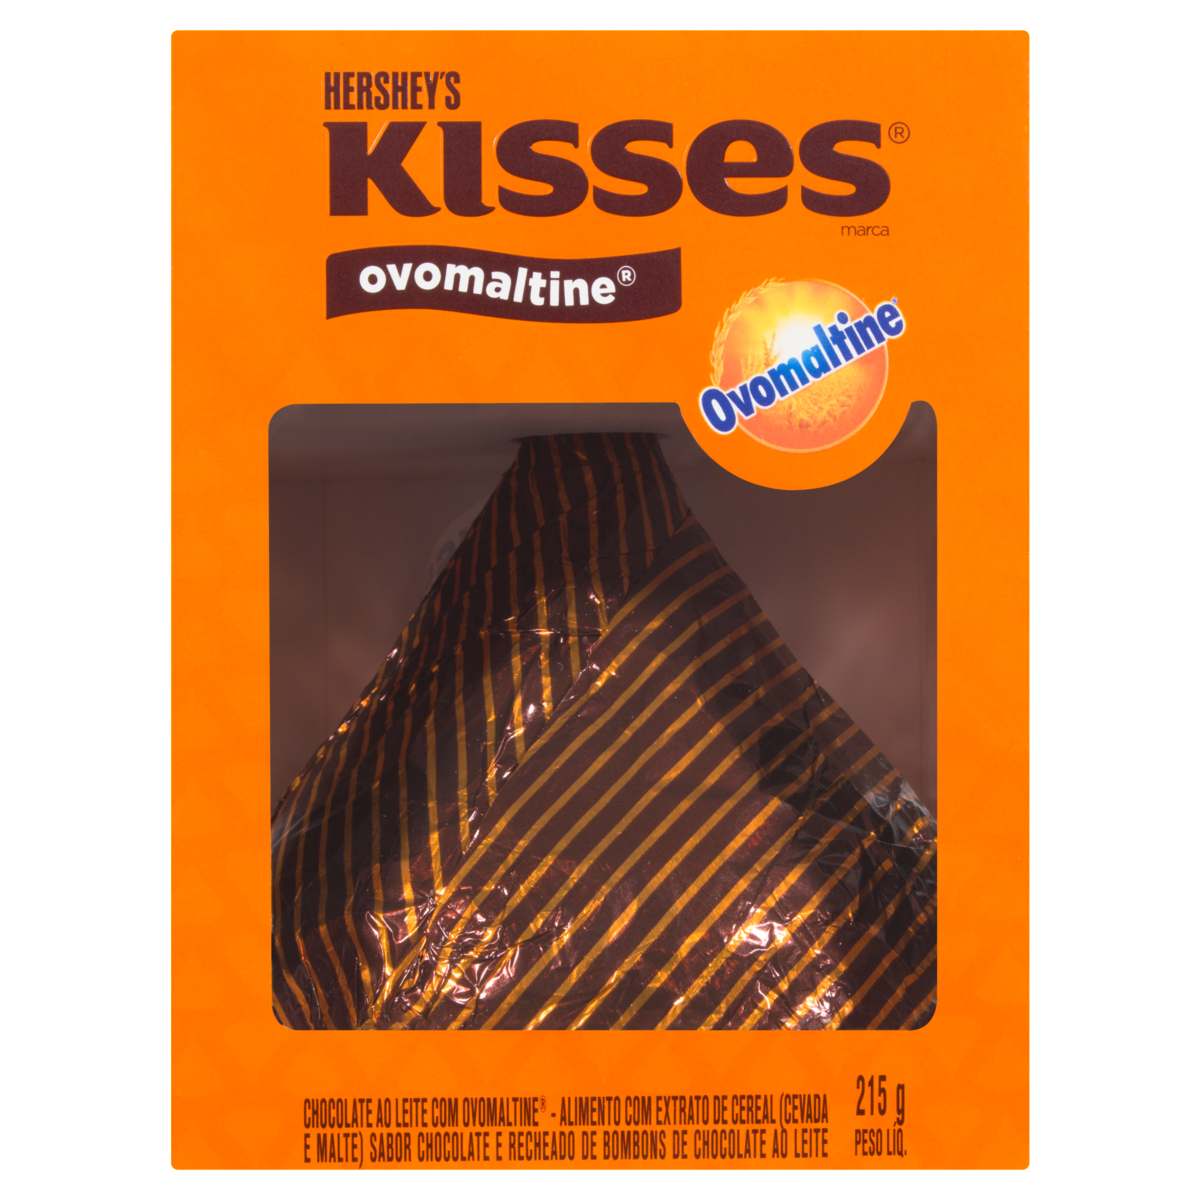 7898292889037 - CHOCOLATE OVOMALTINE HERSHEYS KISSES CAIXA 215G